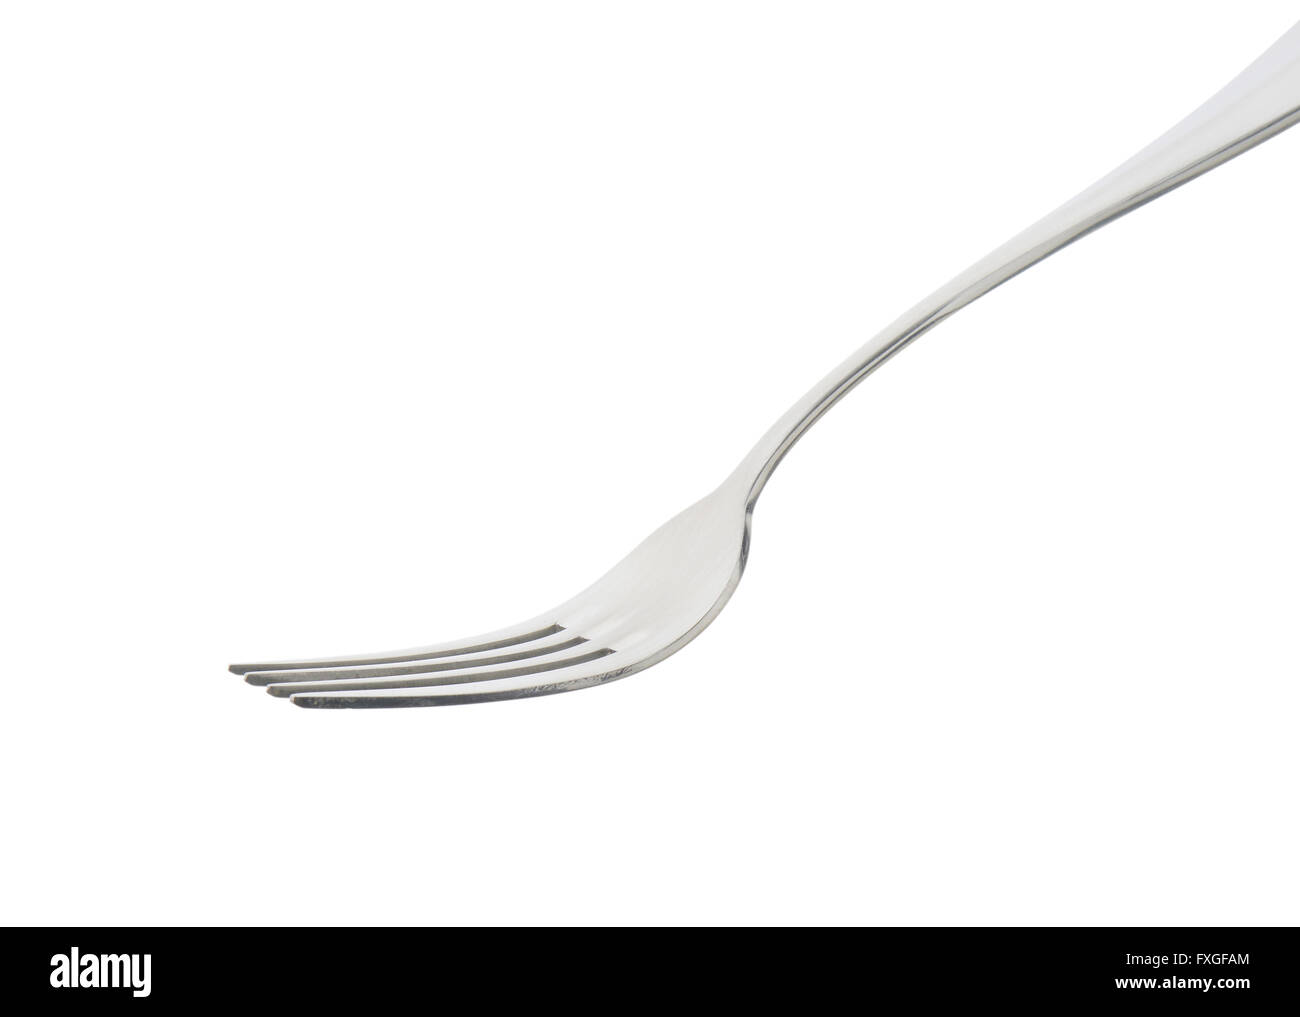 Plain four-pronged metal dinner fork Stock Photo